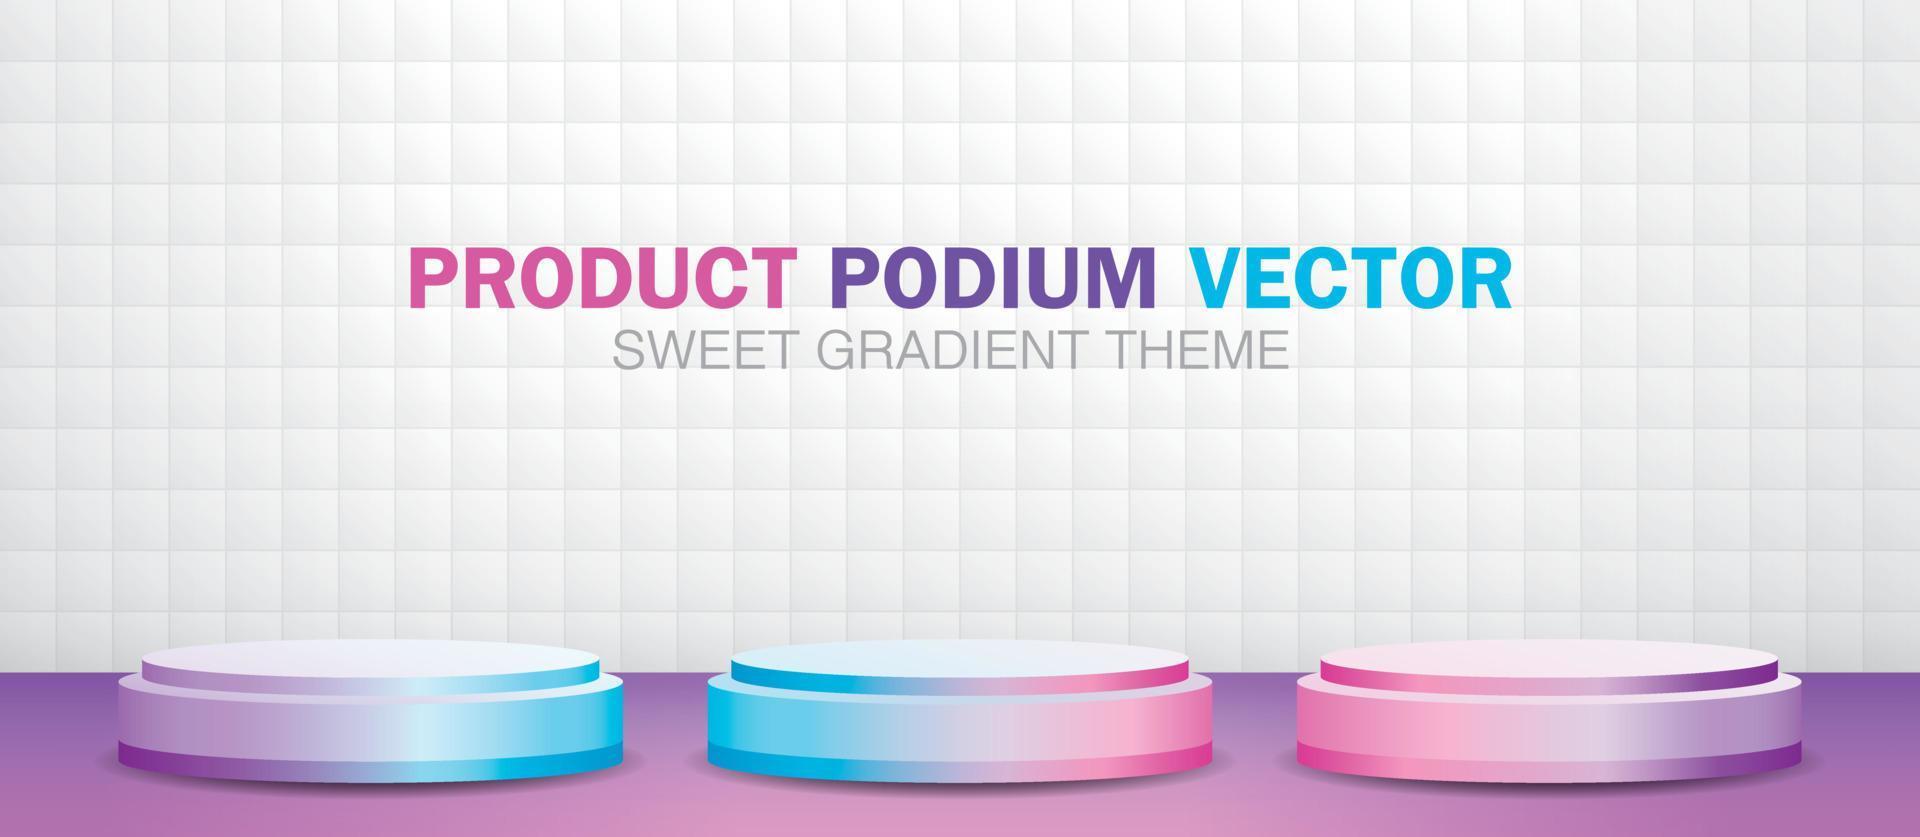 söt gradient produkt podium 3d illustration vektor. vektor